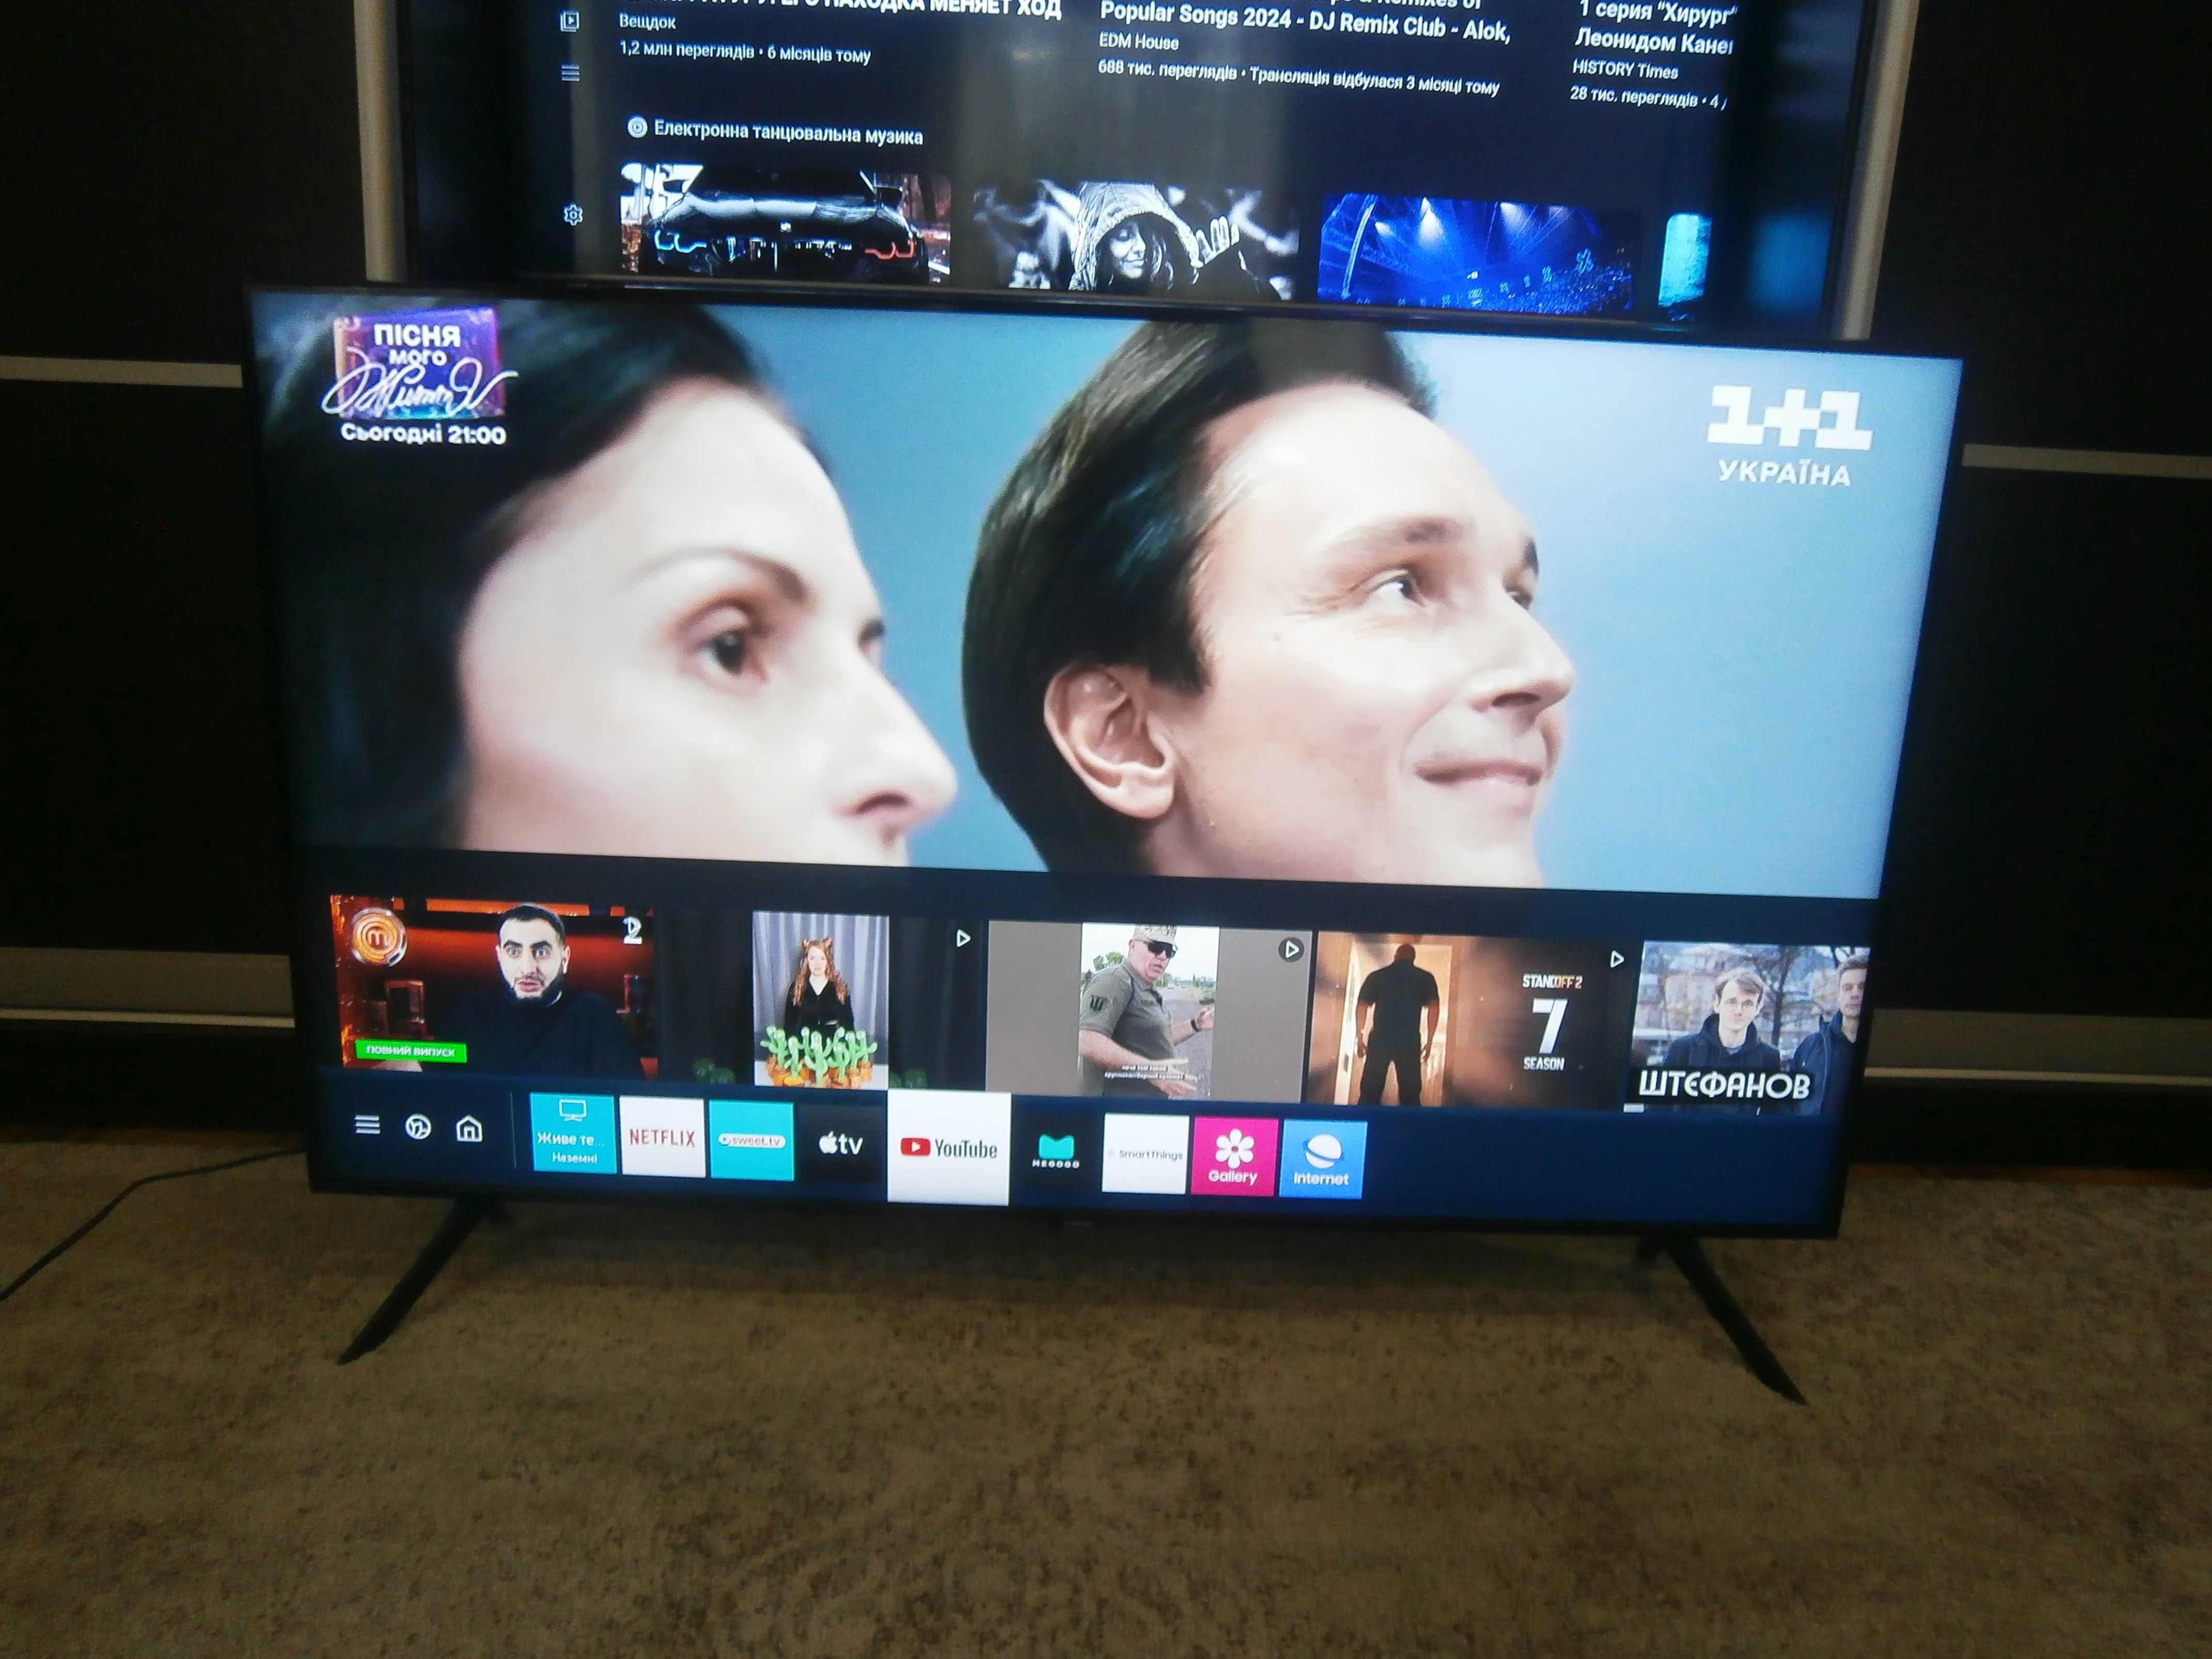 QLED 4Ksmart TV Samsung 50дюймів QE50Q60T 2020рік є все WiFi T2 S2 ітд